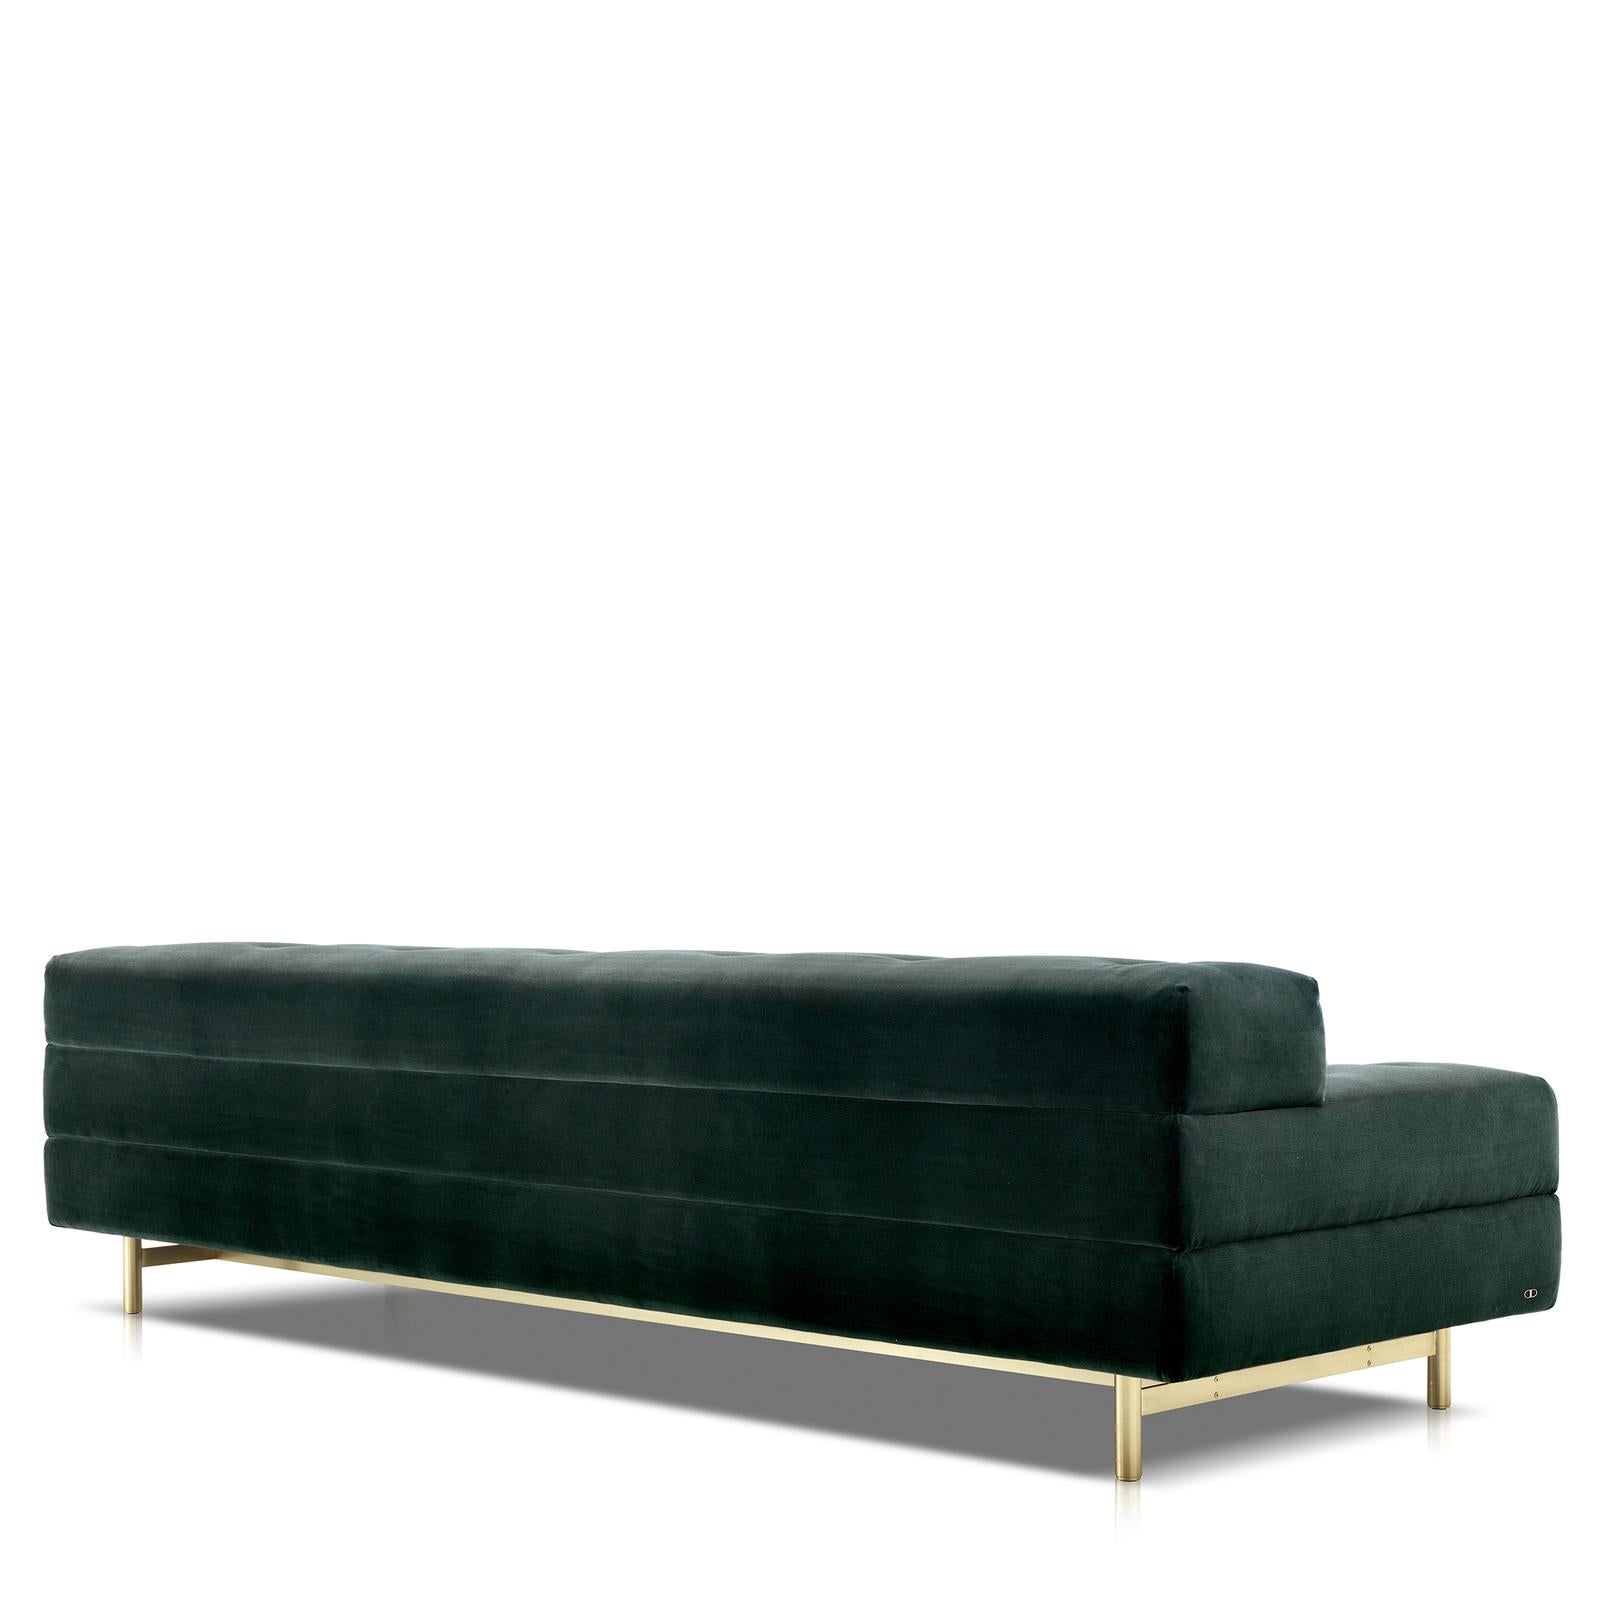 Dieses elegante und raffinierte Sofa ist ein vielseitiges Möbelstück, das sowohl zu klassischen als auch zu modernen Einrichtungen passt. Die lange Silhouette ruht auf vier schlanken Füßen aus satiniertem Messing und einer Stahlstruktur, die mit